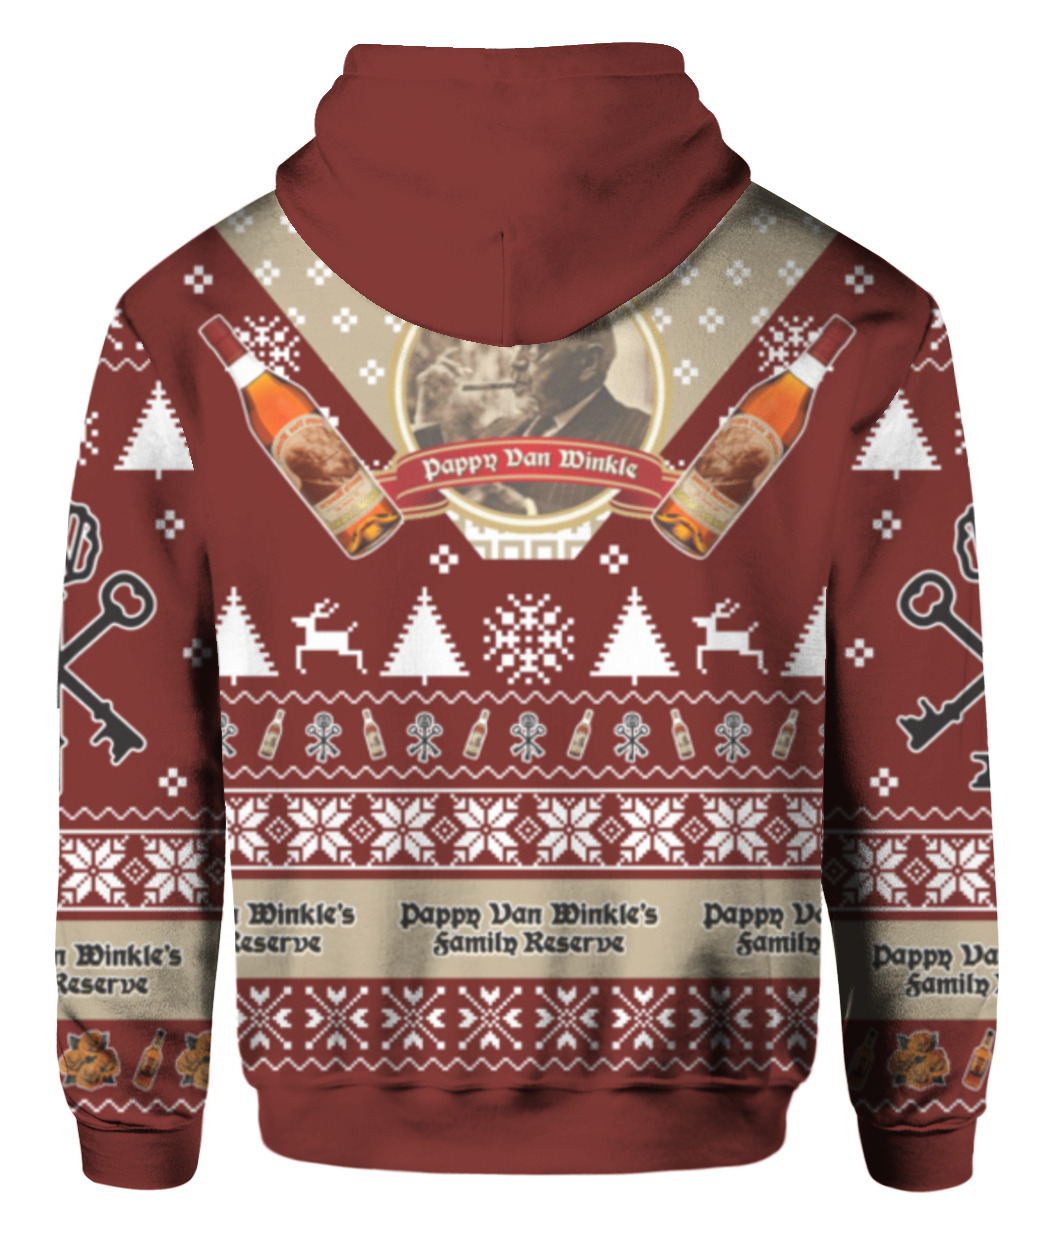 Pappy Van Winkle ugly Christmas sweater - Endastore.com